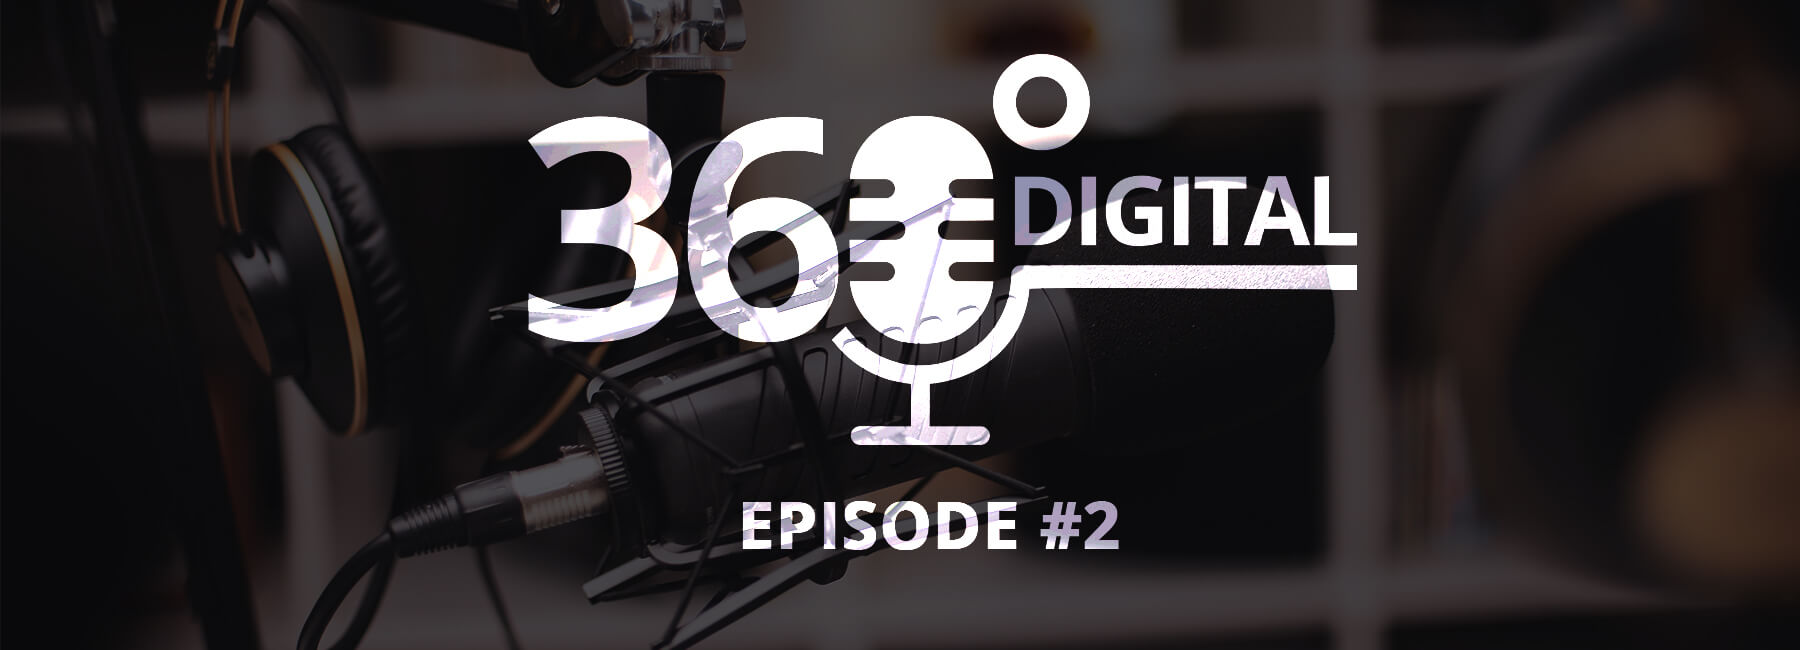 Exklusives Podcast Interview mit Conversion.com auf 360 Digital